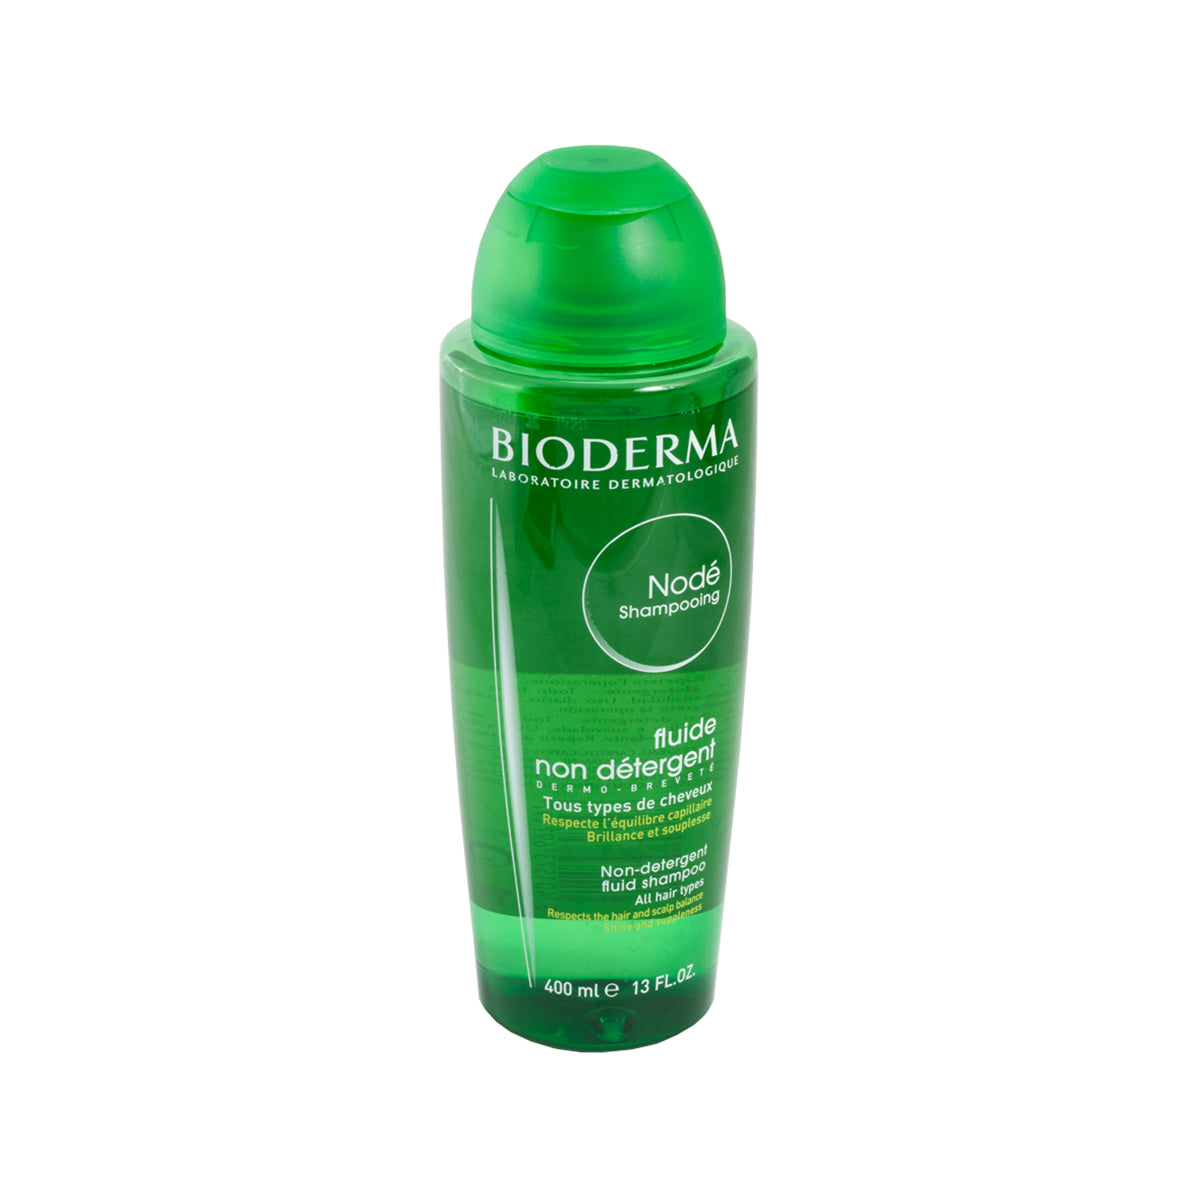 Bioderma Nodé Shampoo Fluido sin Detergente, Limpia y protege el cuero cabelludo, 400ml